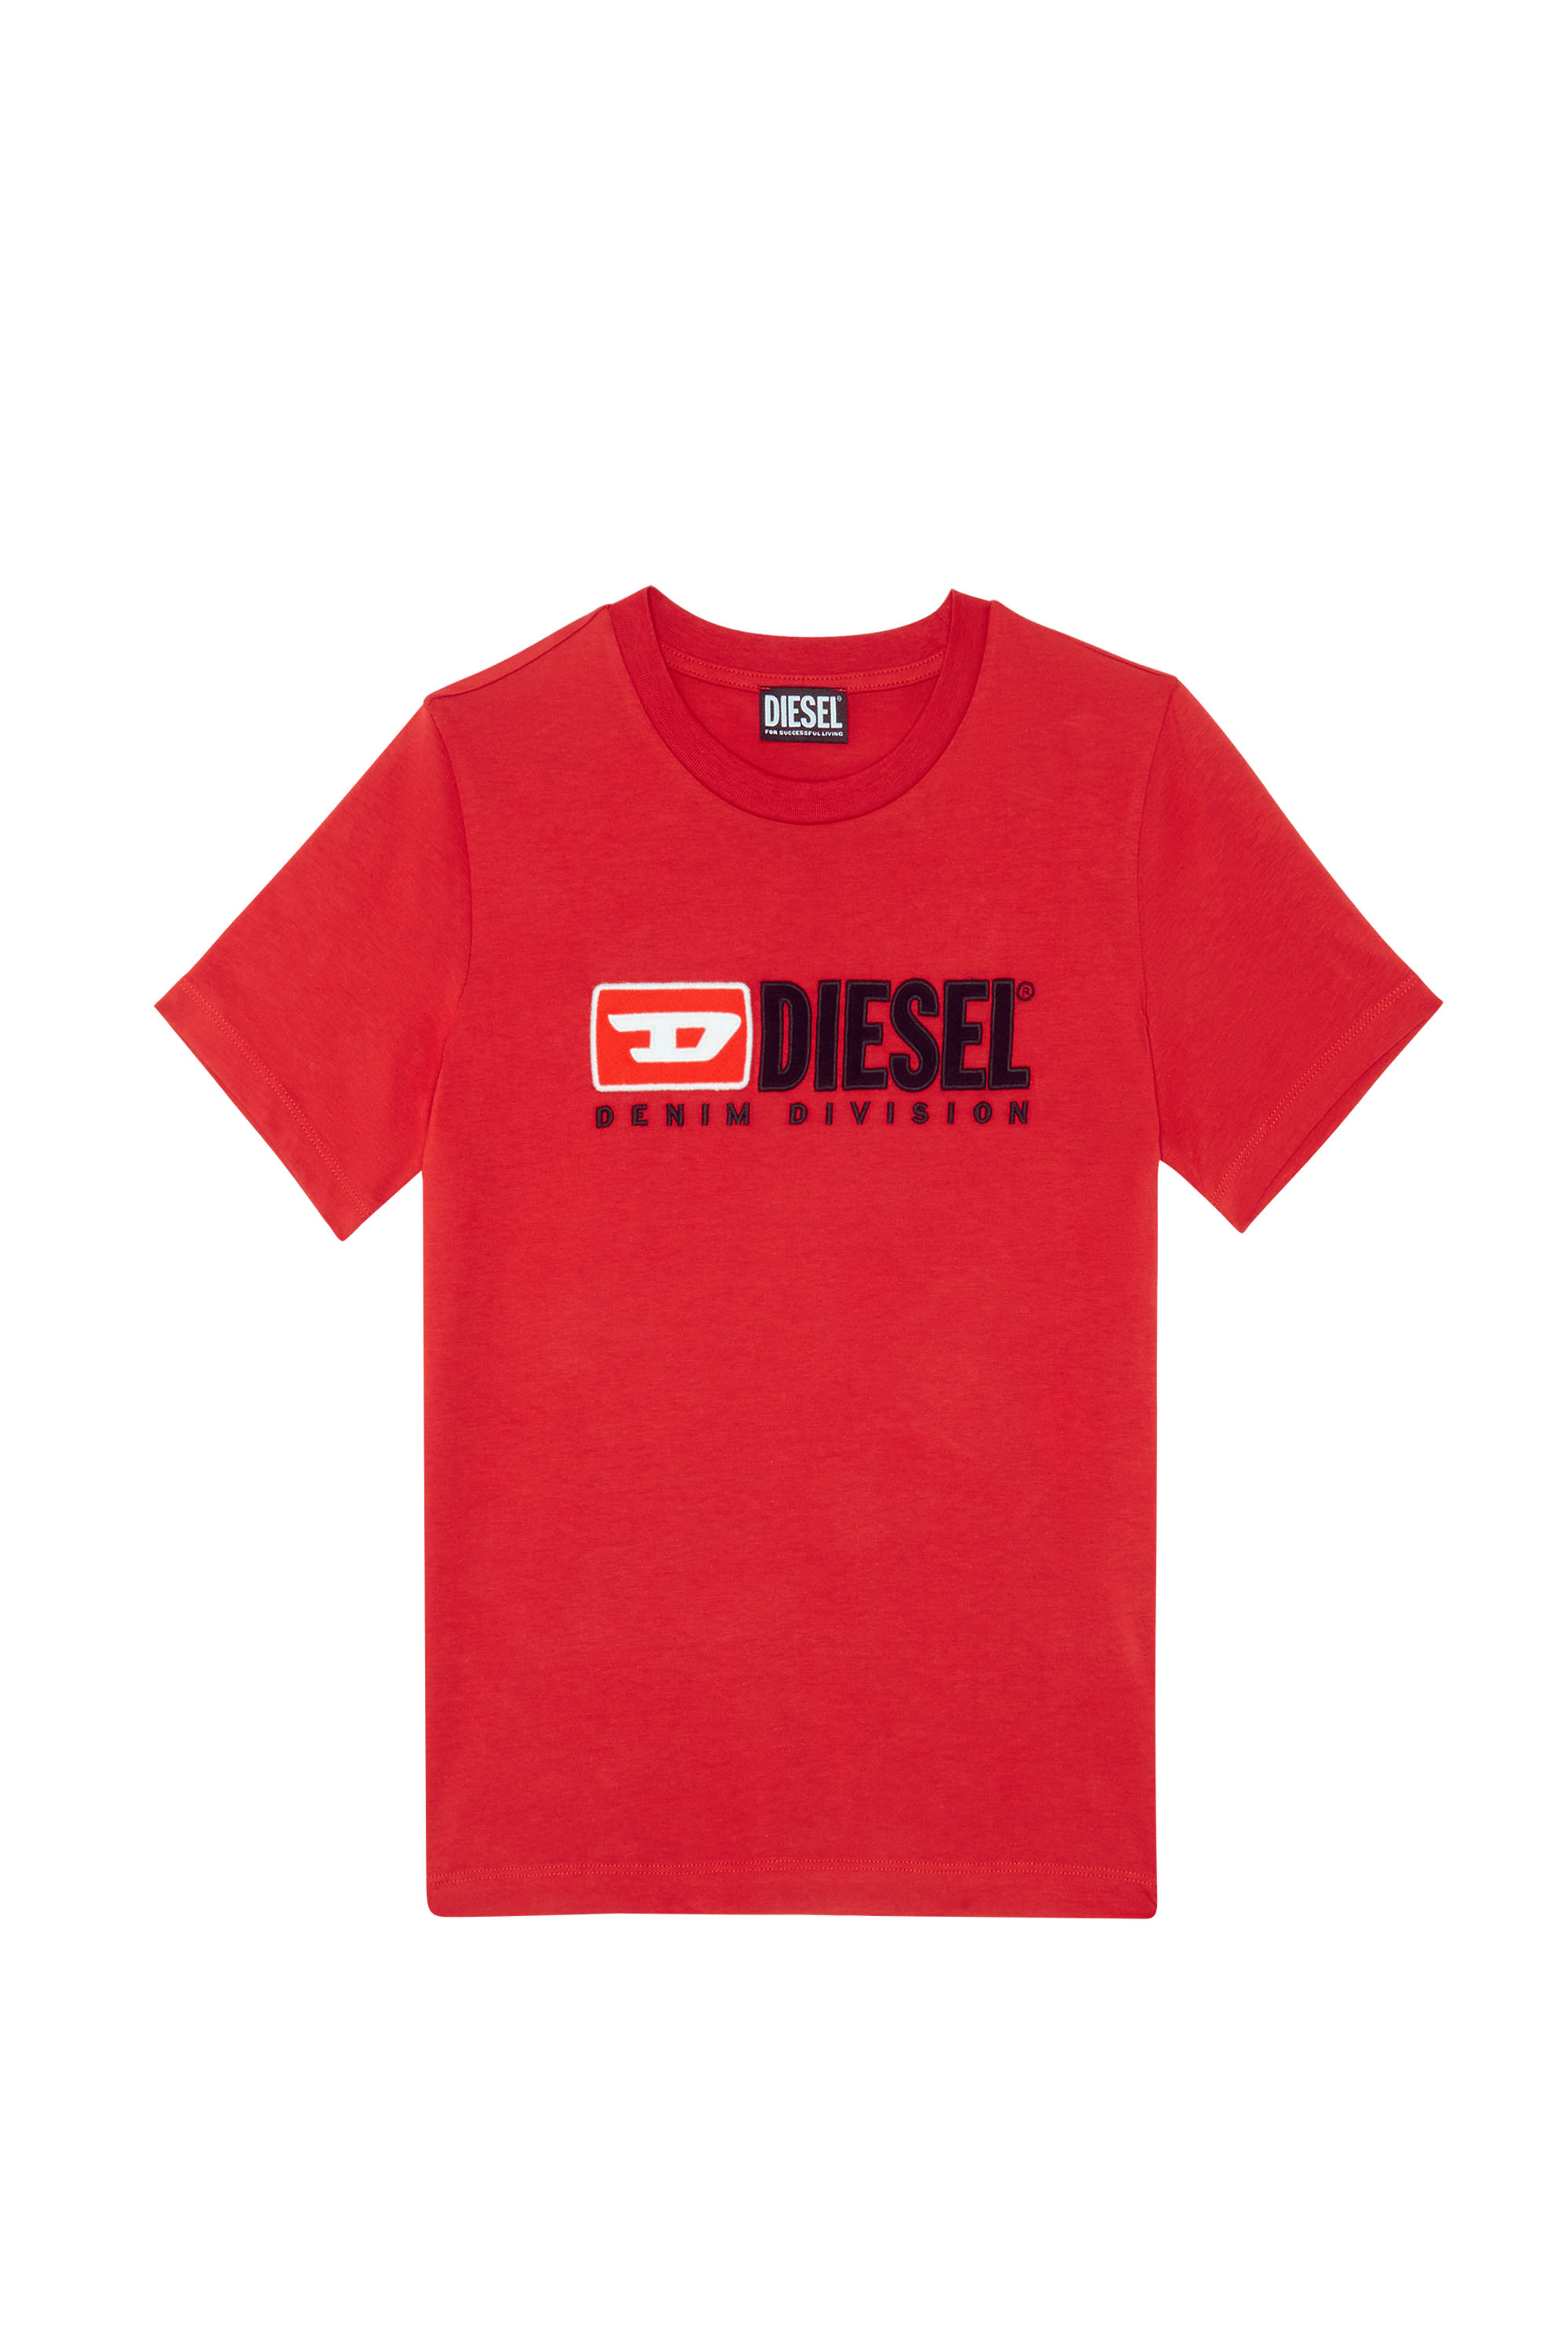 Diesel - T-REG-DIV, Rosso - Image 1